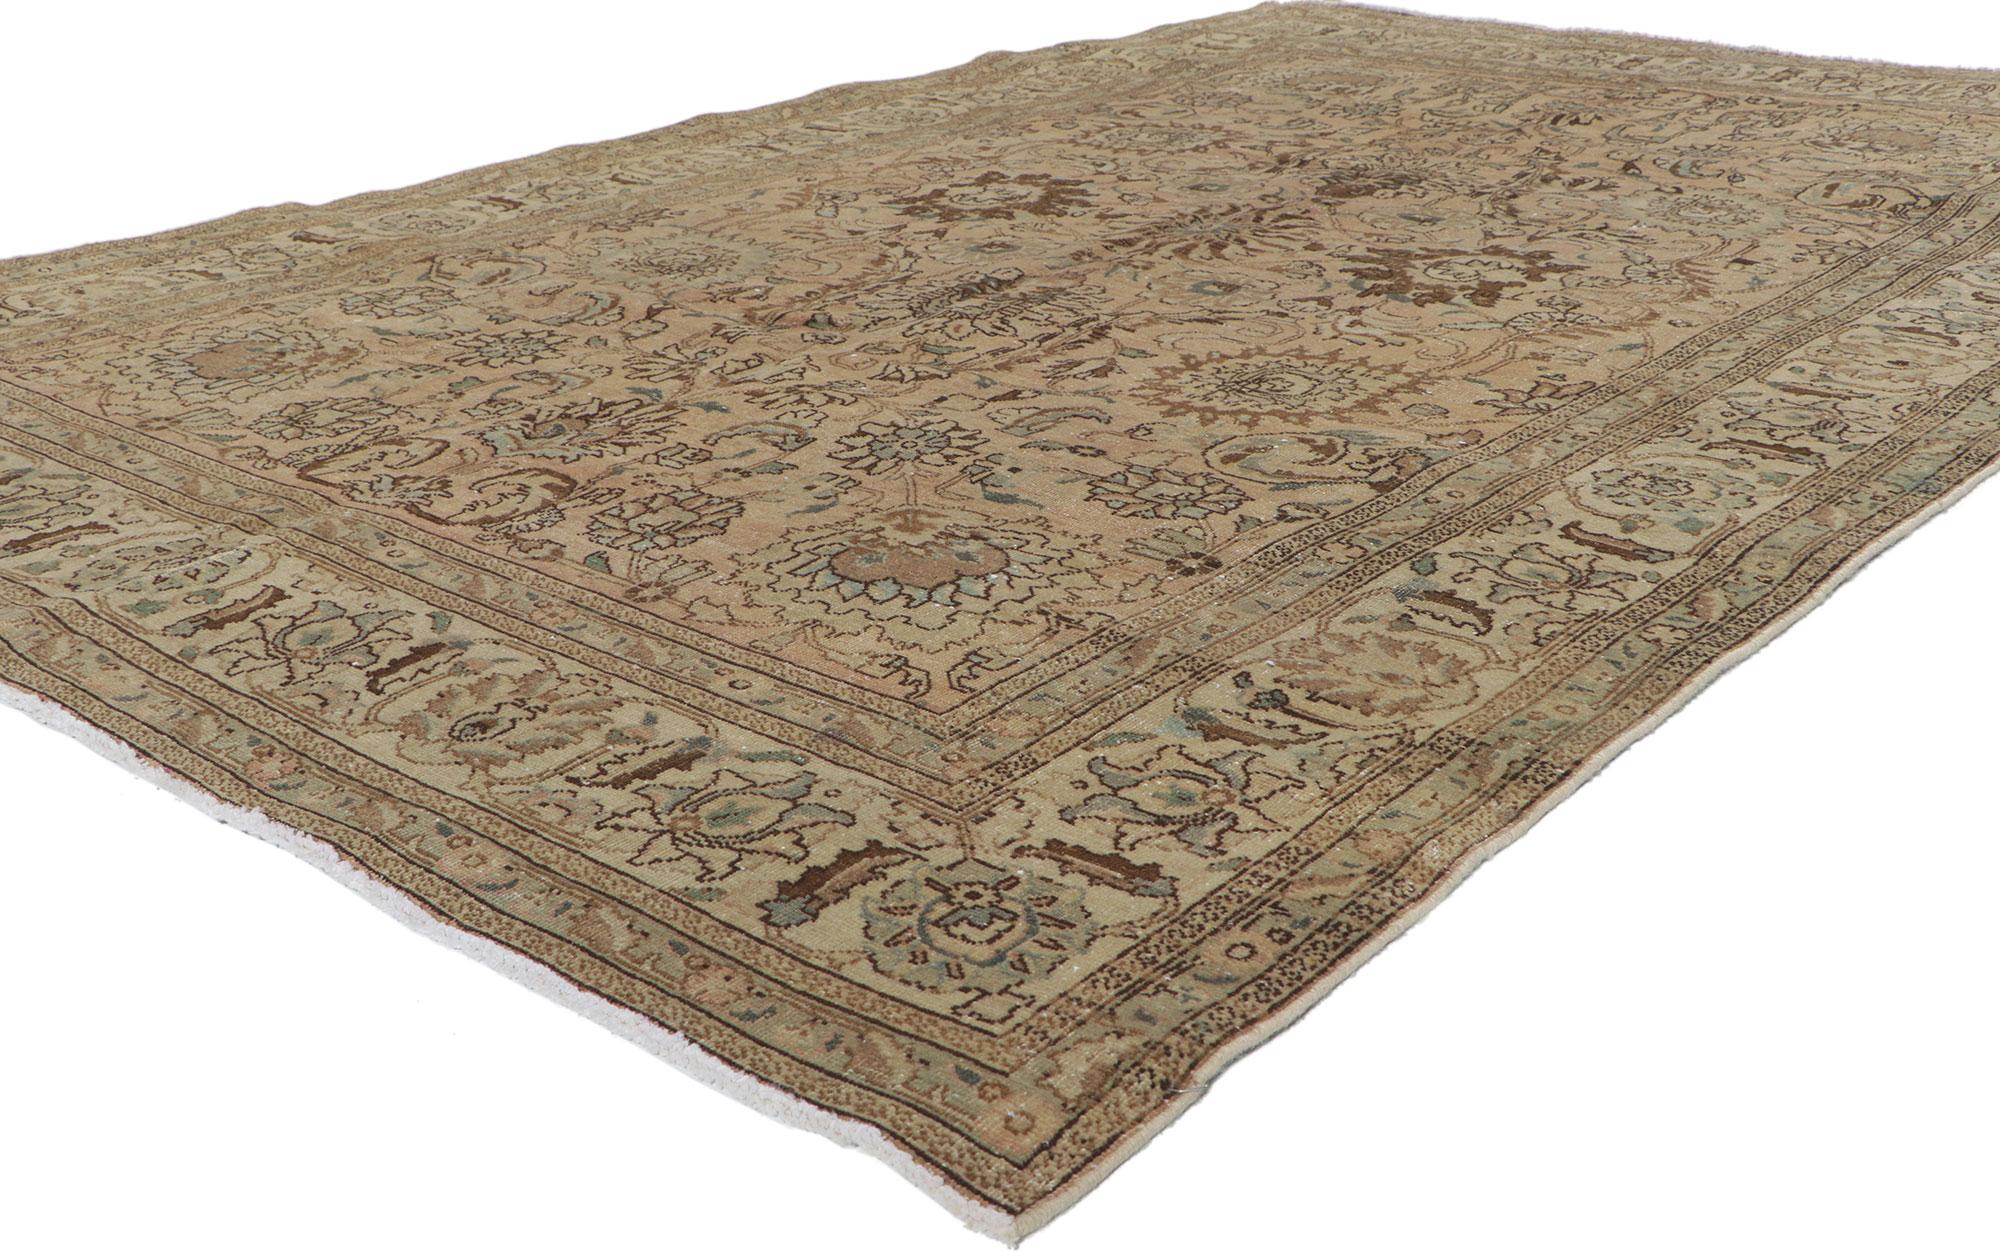 60969 Vintage Persian Tabriz Rug 06'04 x 09'06. Chaleureux et accueillant, ce tapis Tabriz persan vintage en laine nouée à la main présente un motif botanique sur toute la surface, entouré d'une bordure Herati classique. Avec son design intemporel